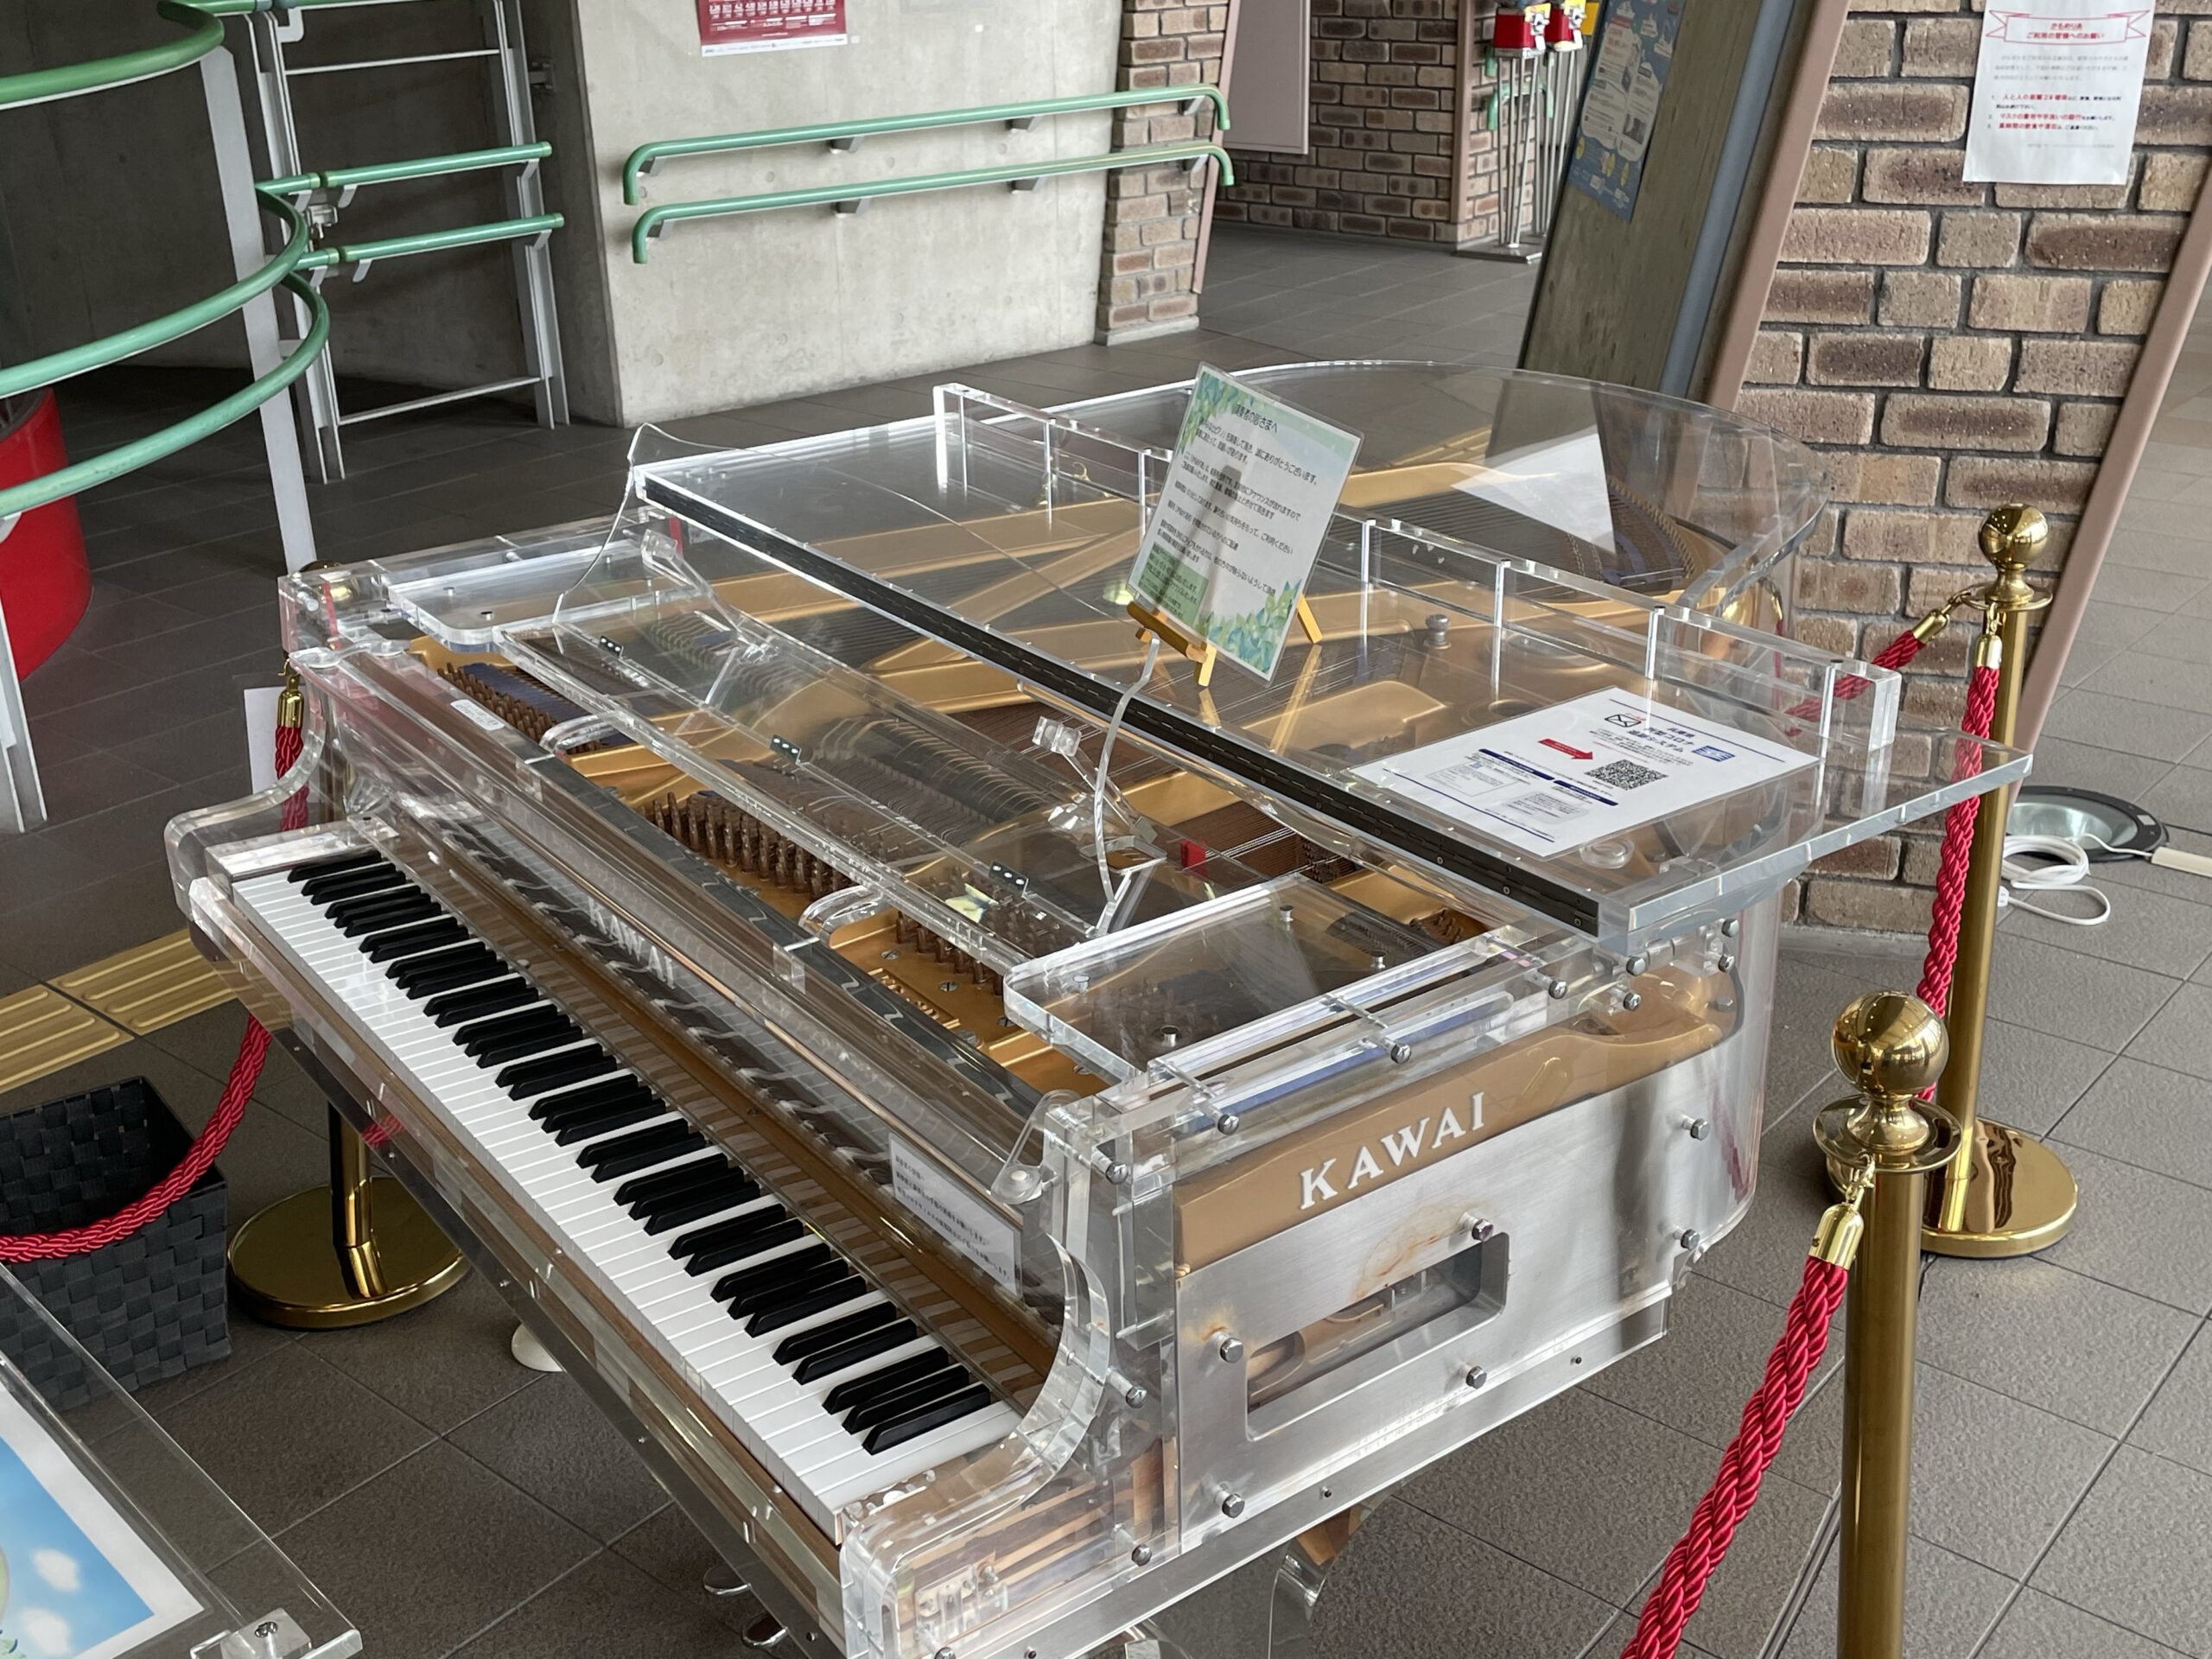 『クリスタルのストリートピアノ』神戸にたった1台だけのクリスタルバージョン、定番の観光地にあるのに影が薄すぎ